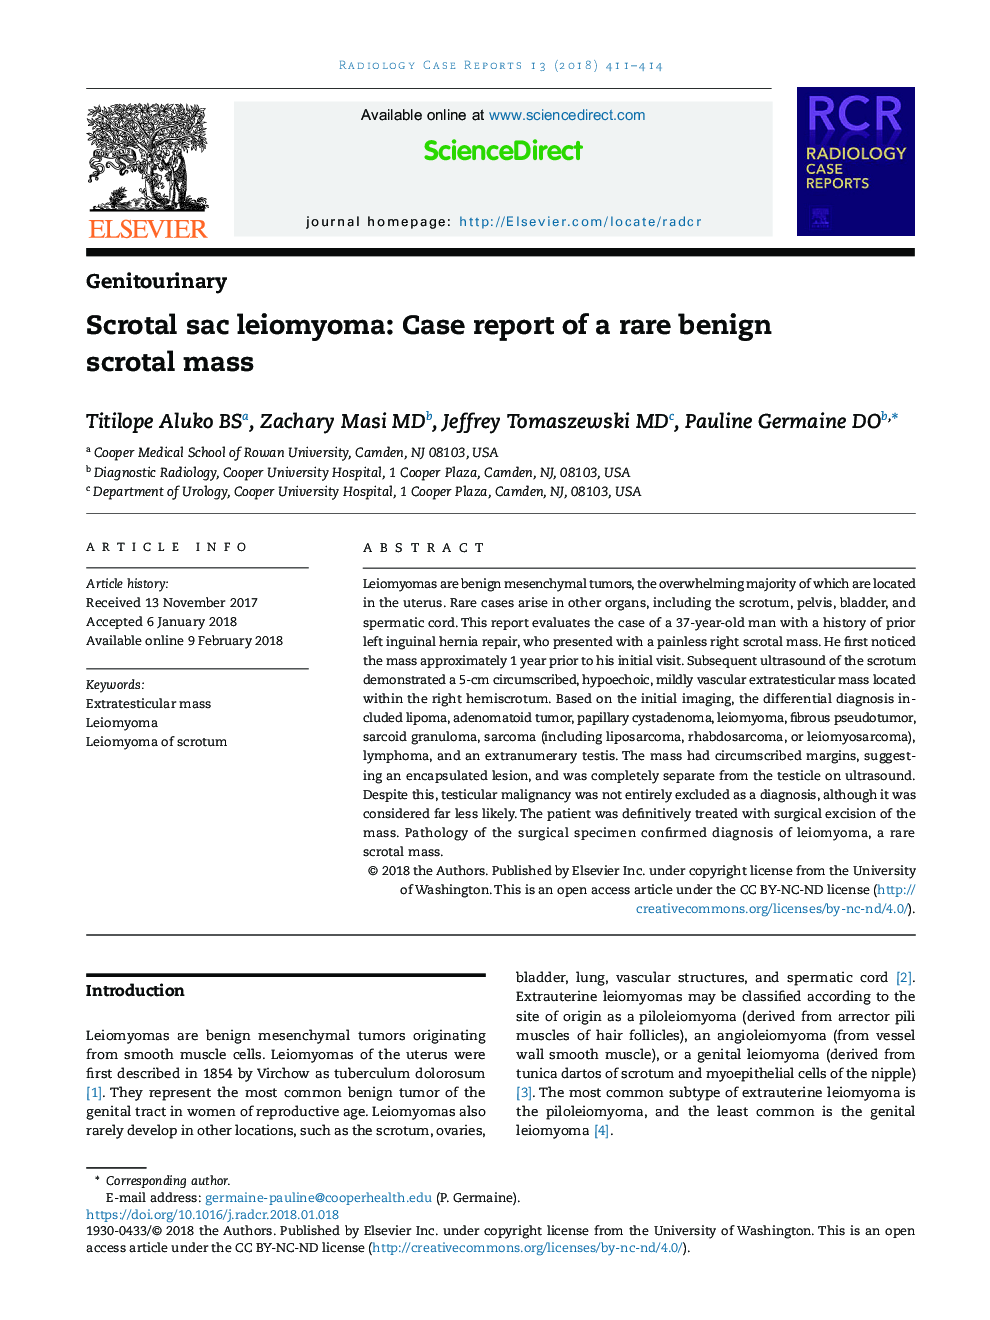 Scrotal sac leiomyoma: Case report of a rare benign scrotal mass